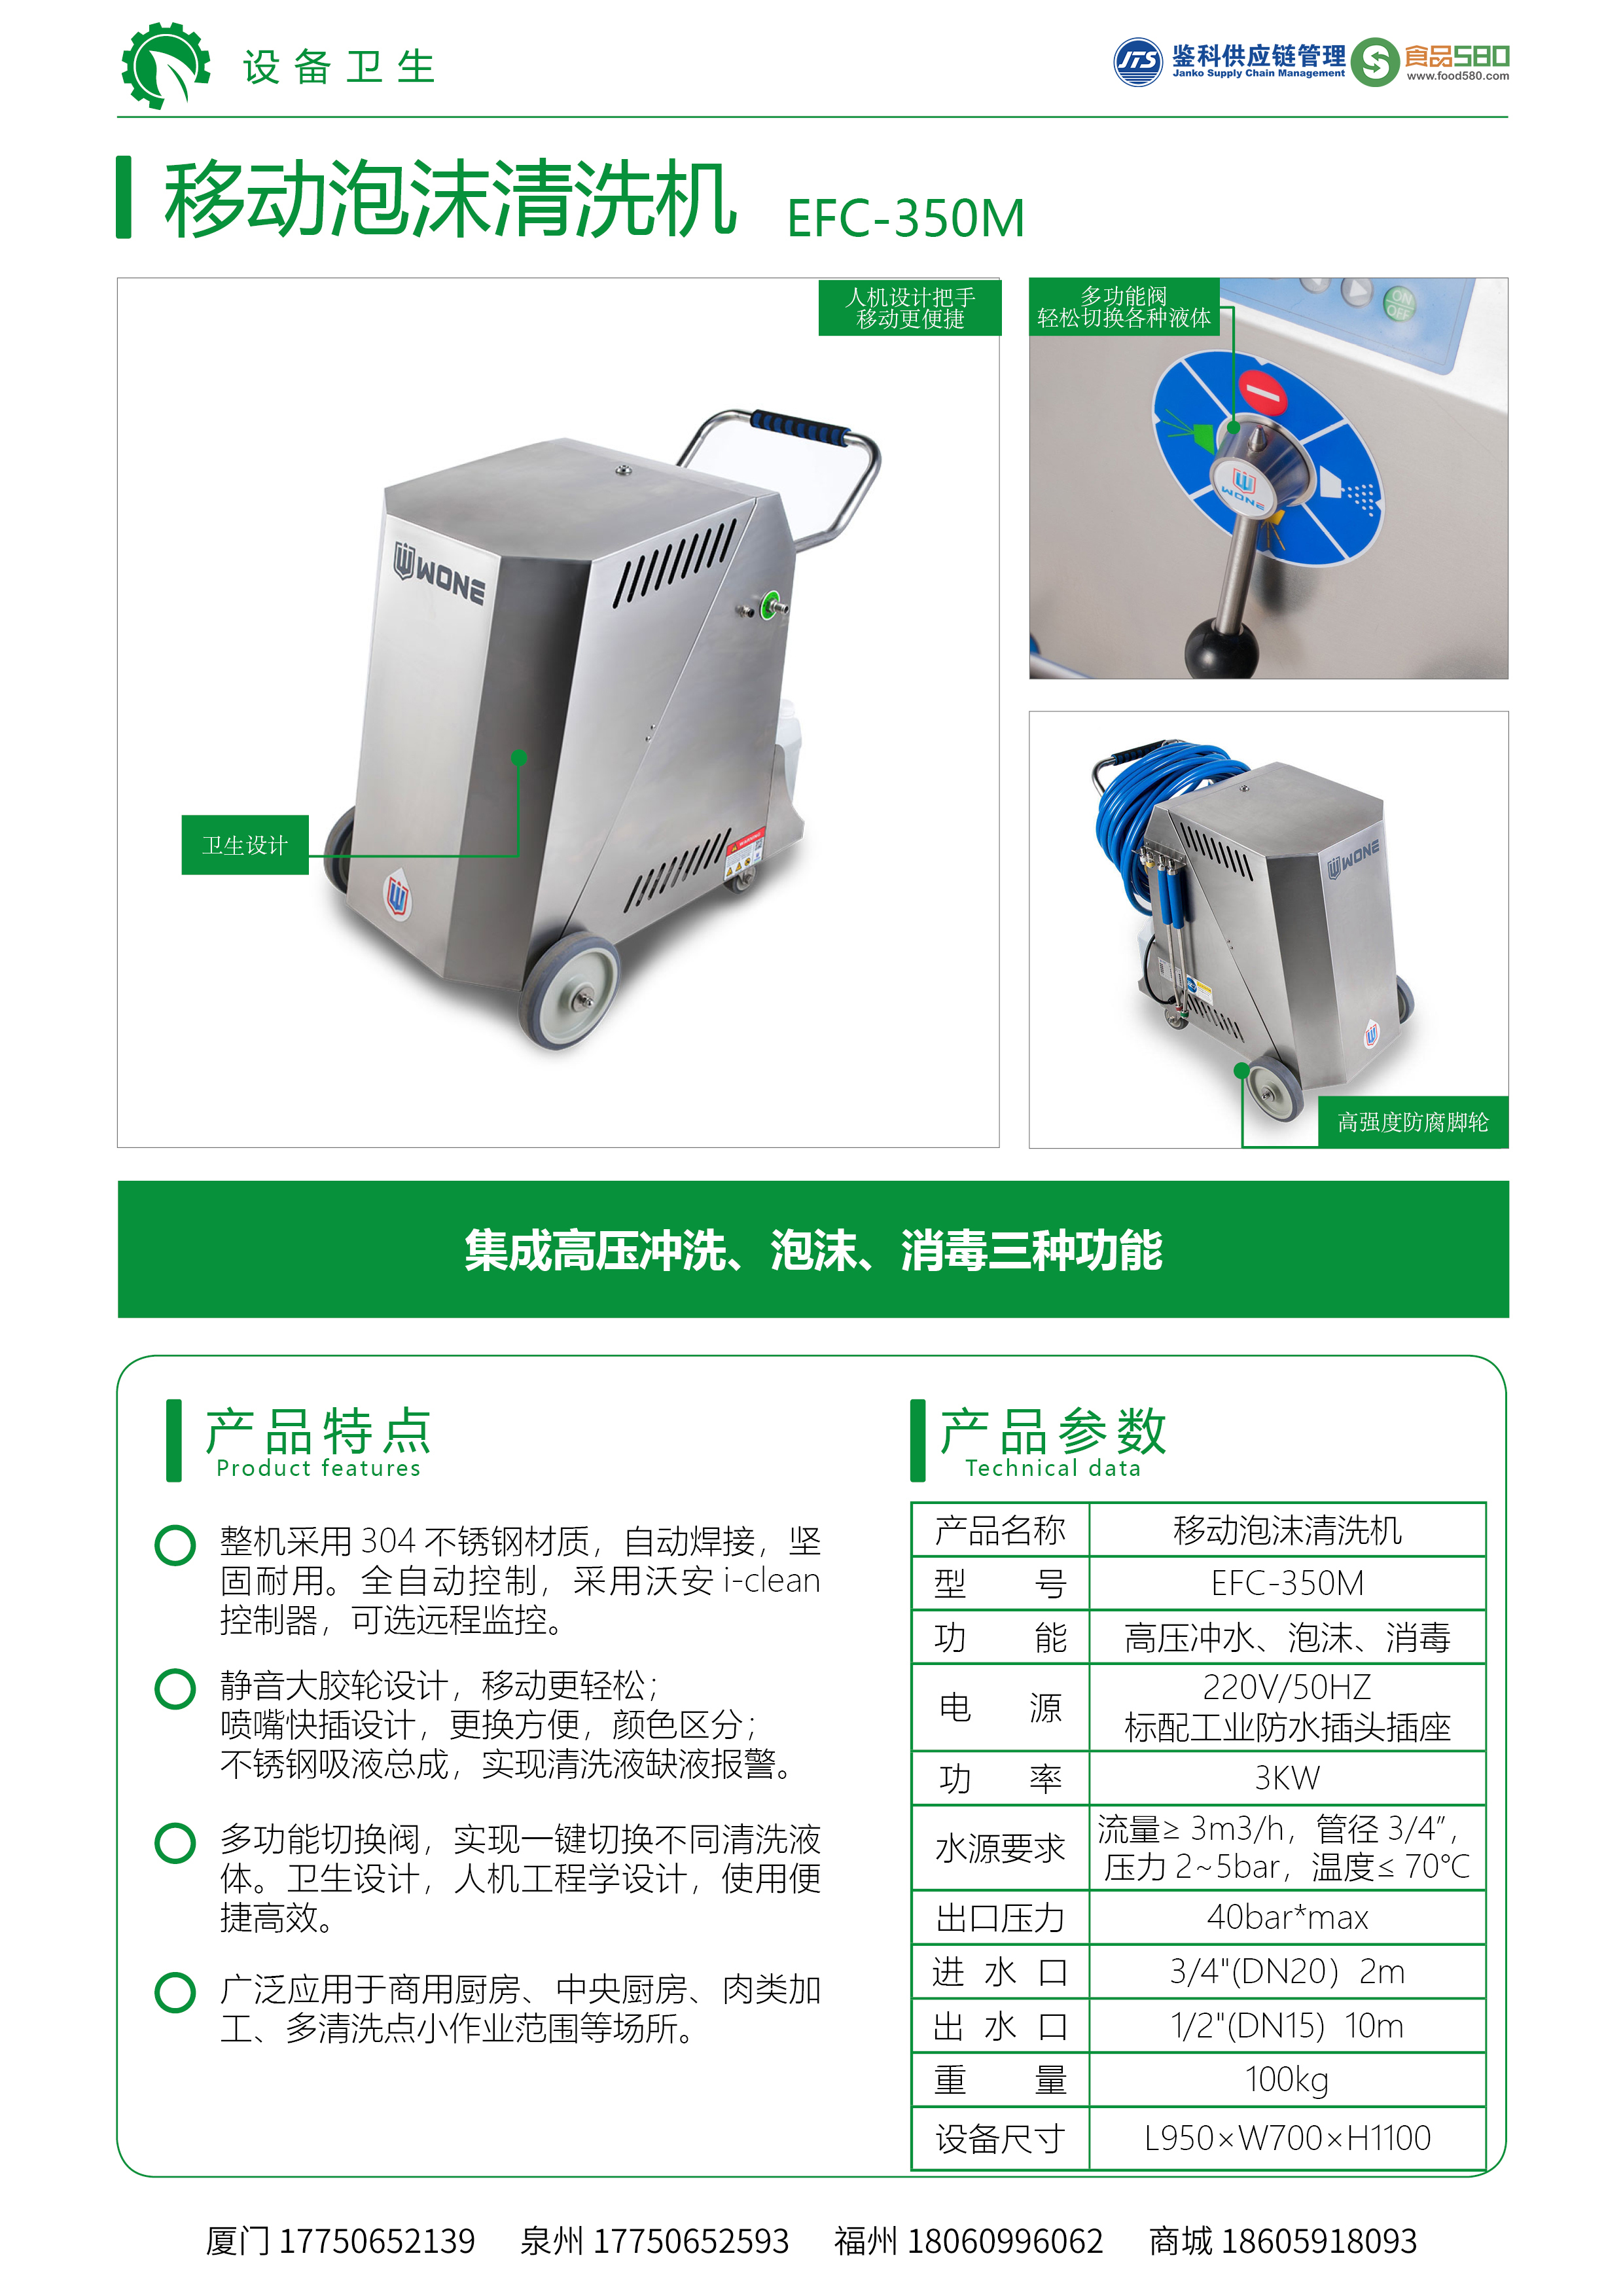 EFC-350M 移动高压泡沫清洗机 中文版-R-5.jpg